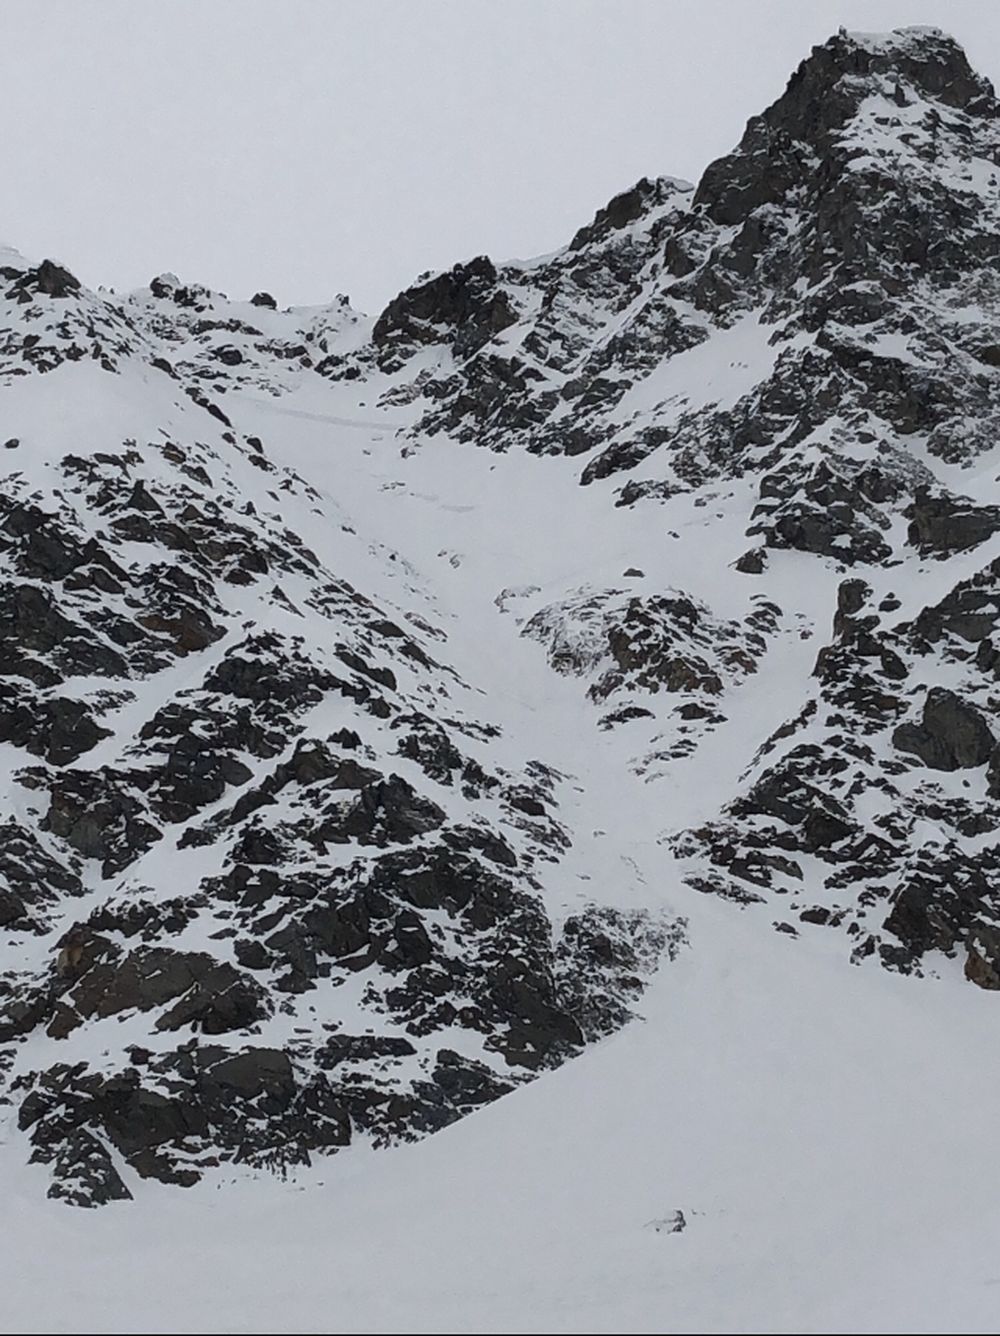 L'avalanche s’est déclenchée dans un secteur du Rossboden à une altitude de 2600 mètres.